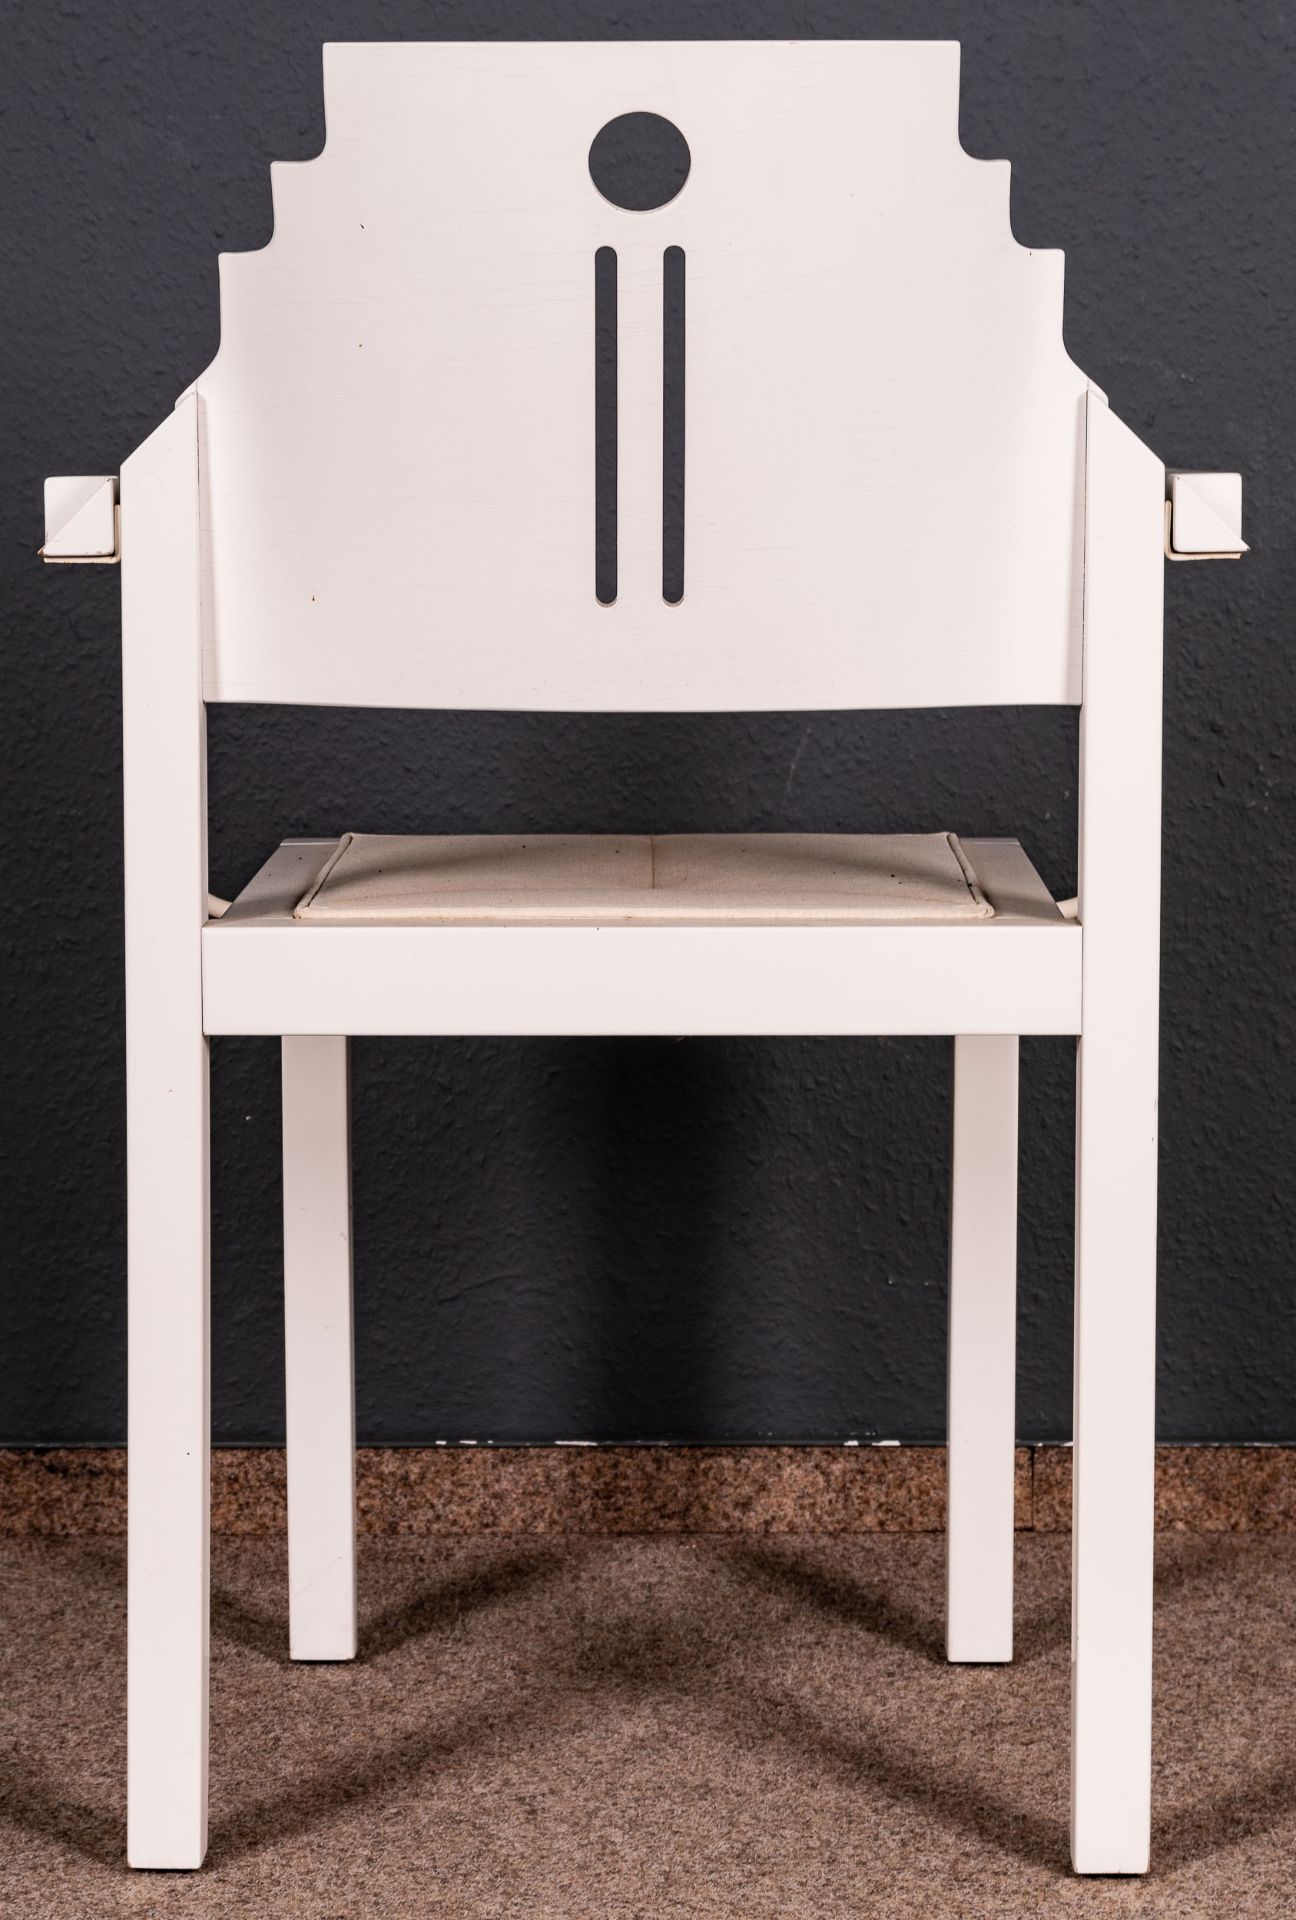 Folge von 8 Armlehnstühlen, weiß lackierte Holzgestelle in nicht alltäglicher Formgebung. Ende 20. - Image 7 of 8